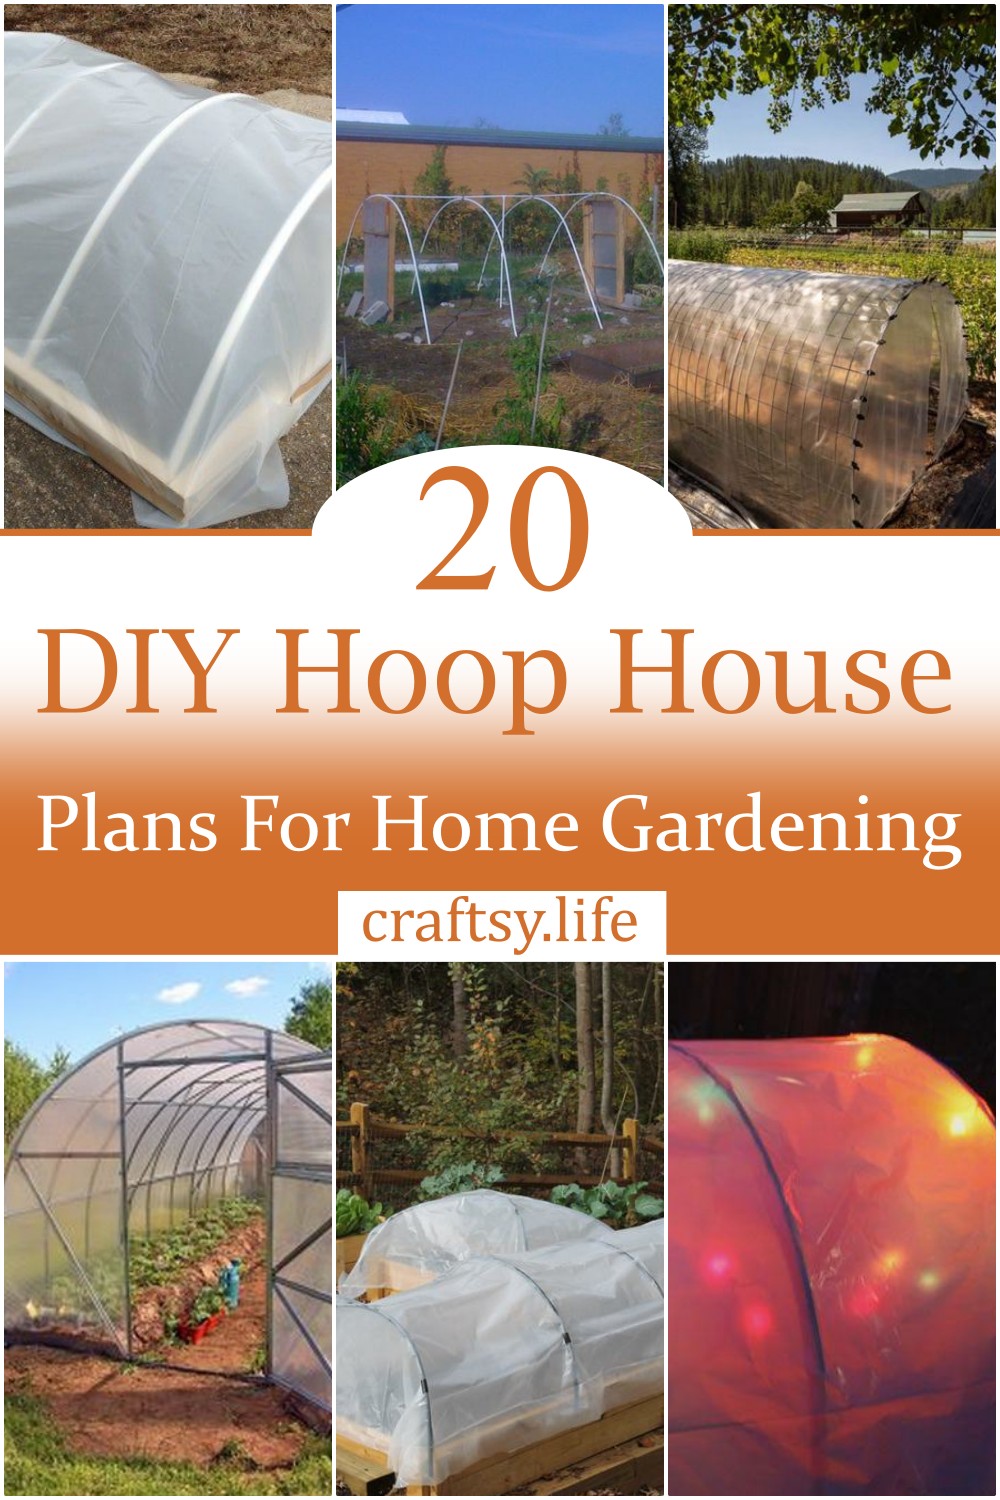 DIY Hoop House Plans